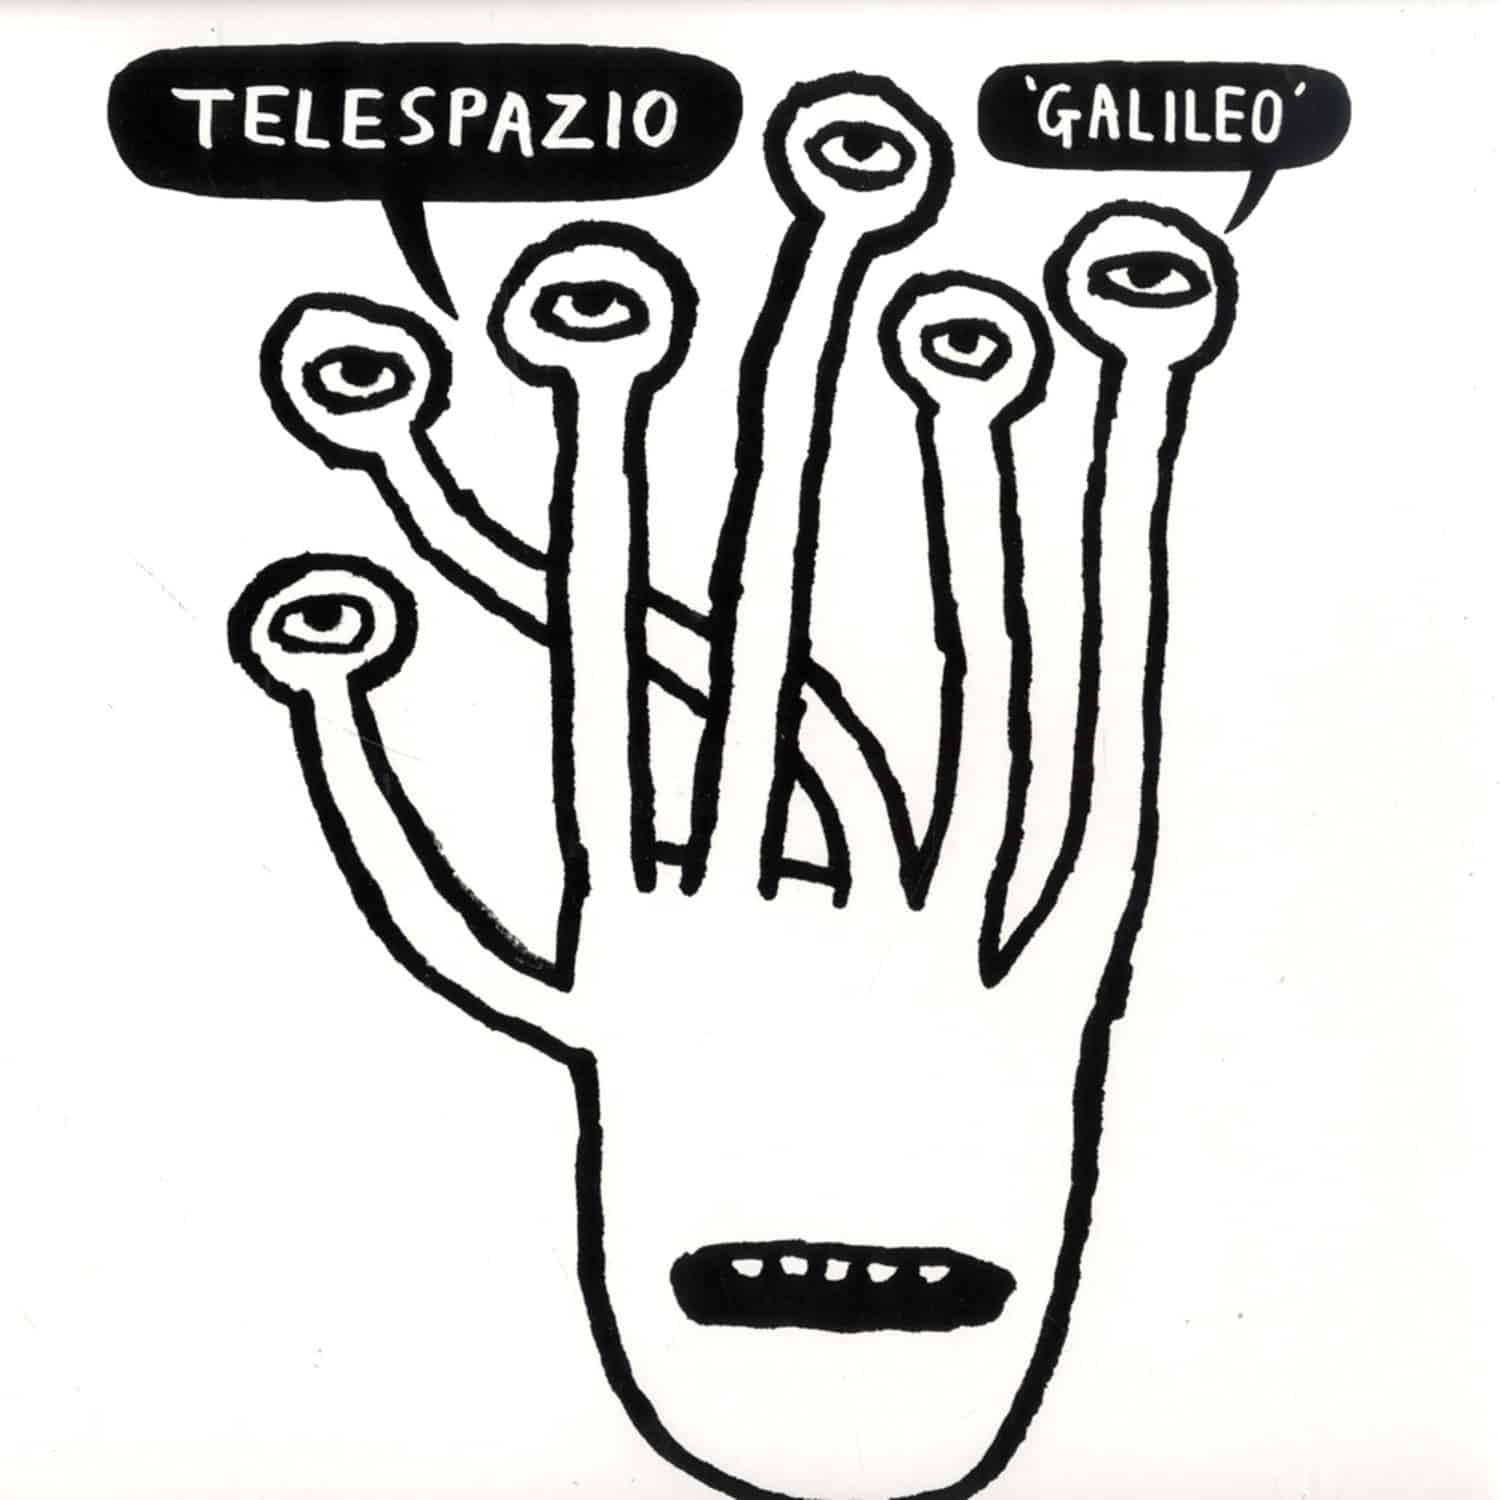 Telespazio - GALILEO